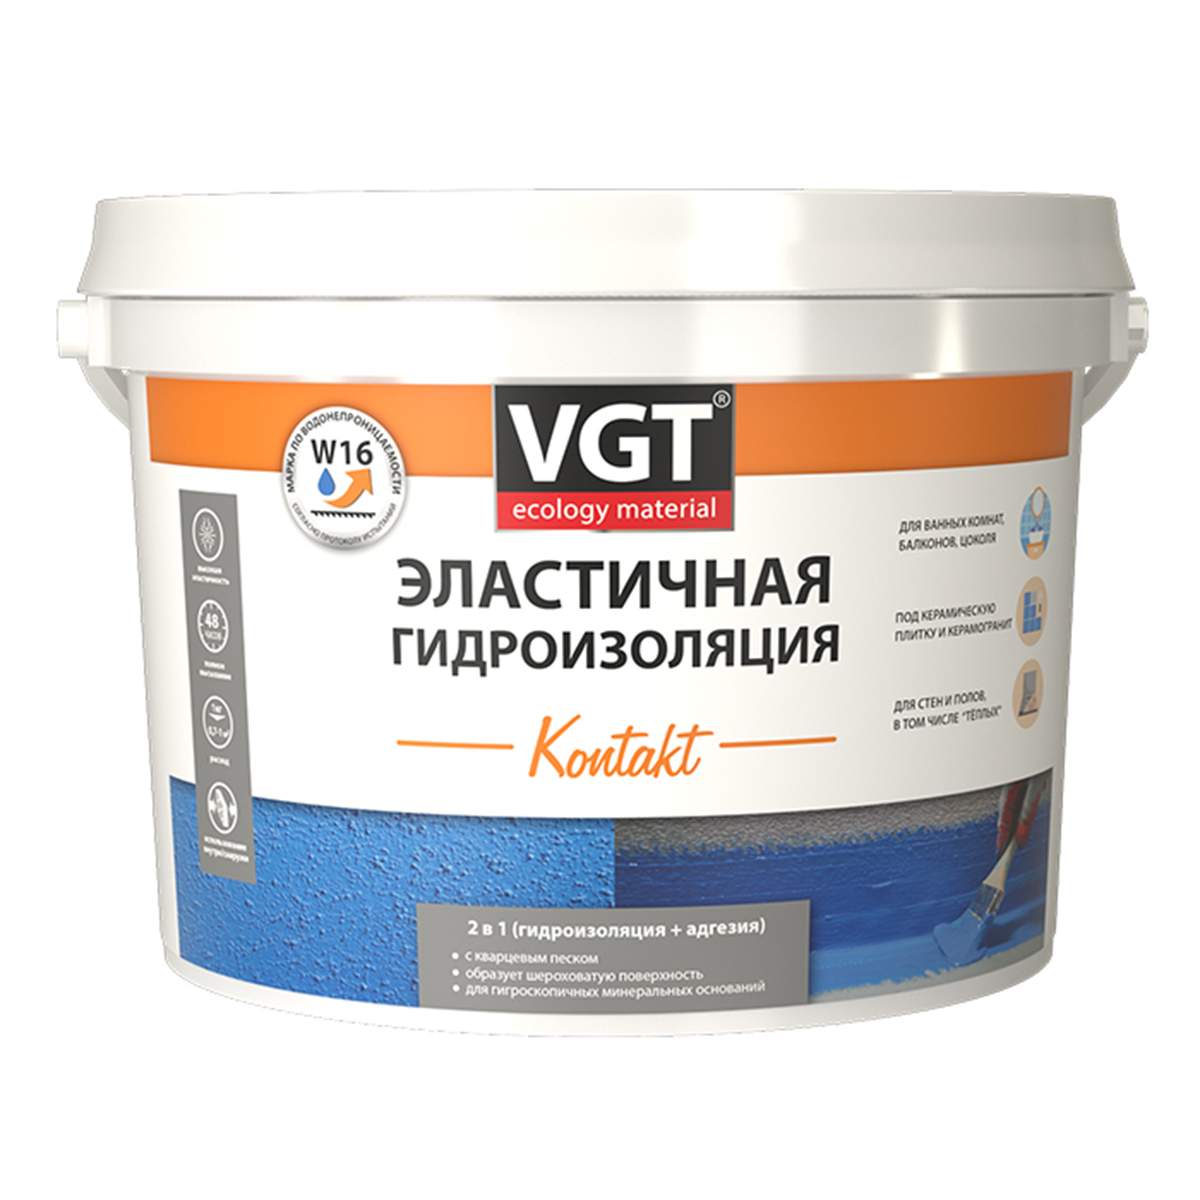 Гидроизоляция эластичная полимерная VGT Kontakt, 6 кг 39239 гидроизоляция эластичная полимерная krafor 256711 1 4 кг